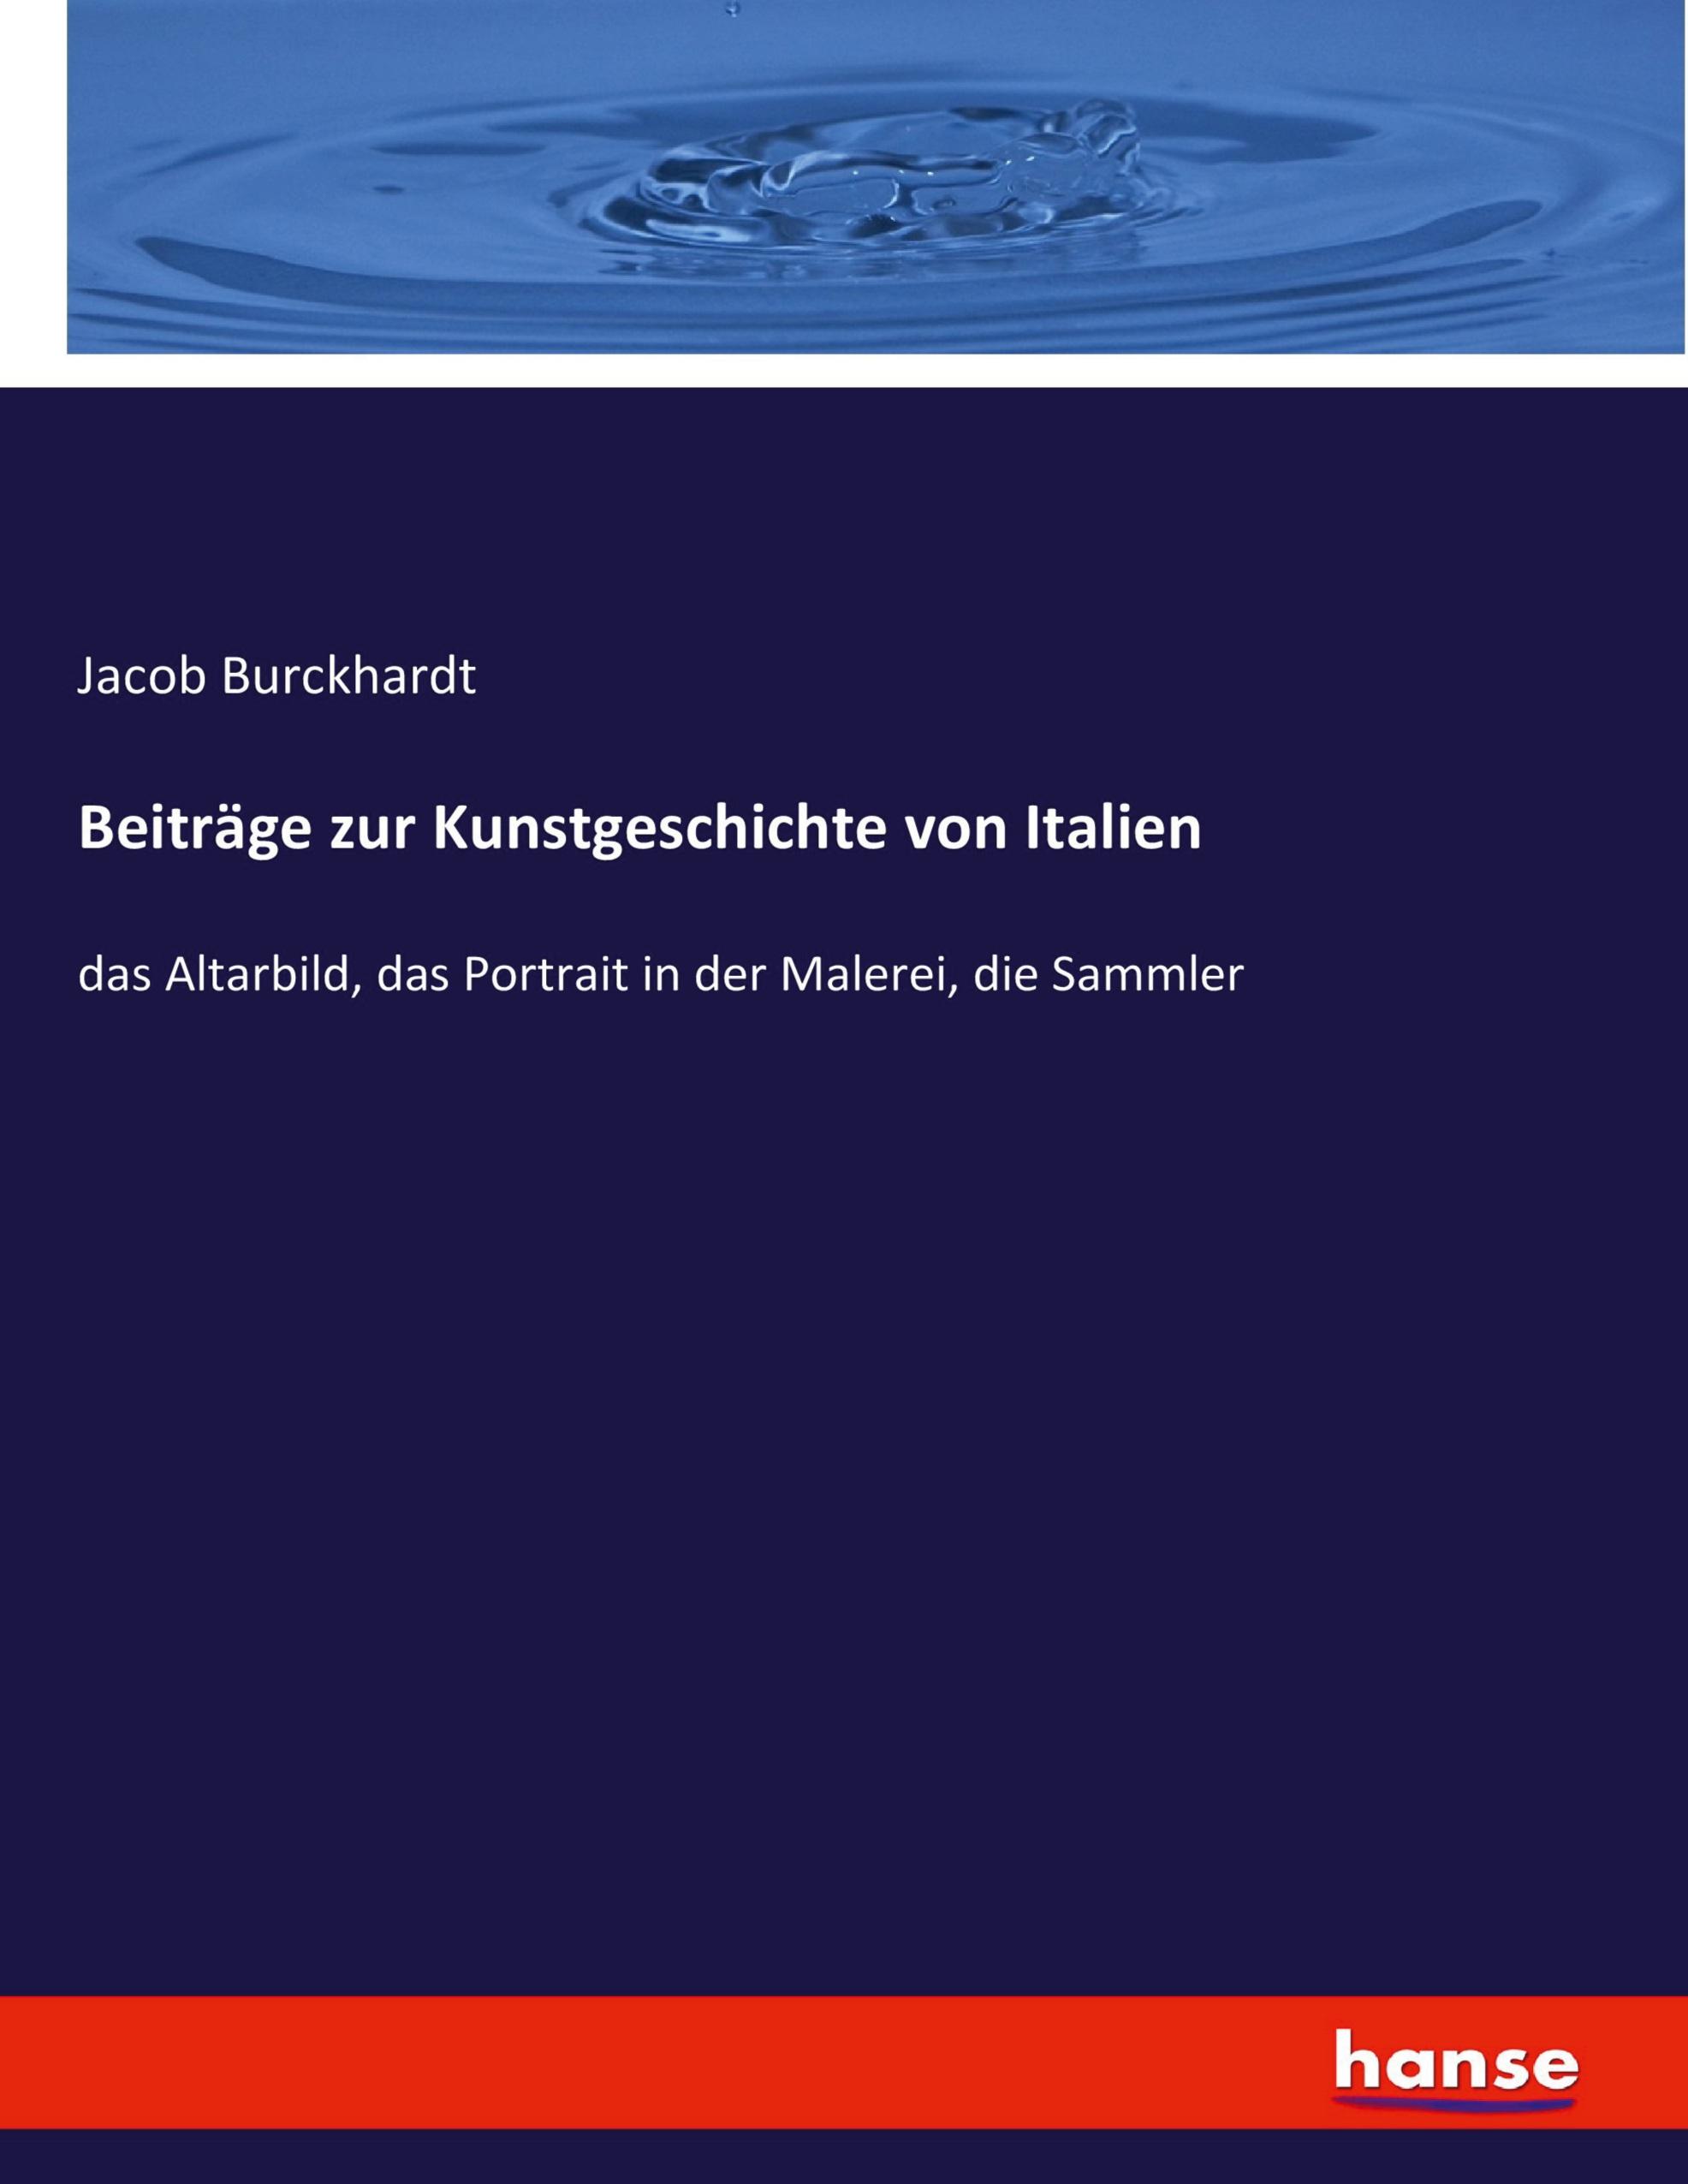 Beitraege zur Kunstgeschichte von Italien - Burckhardt, Jacob Chr.